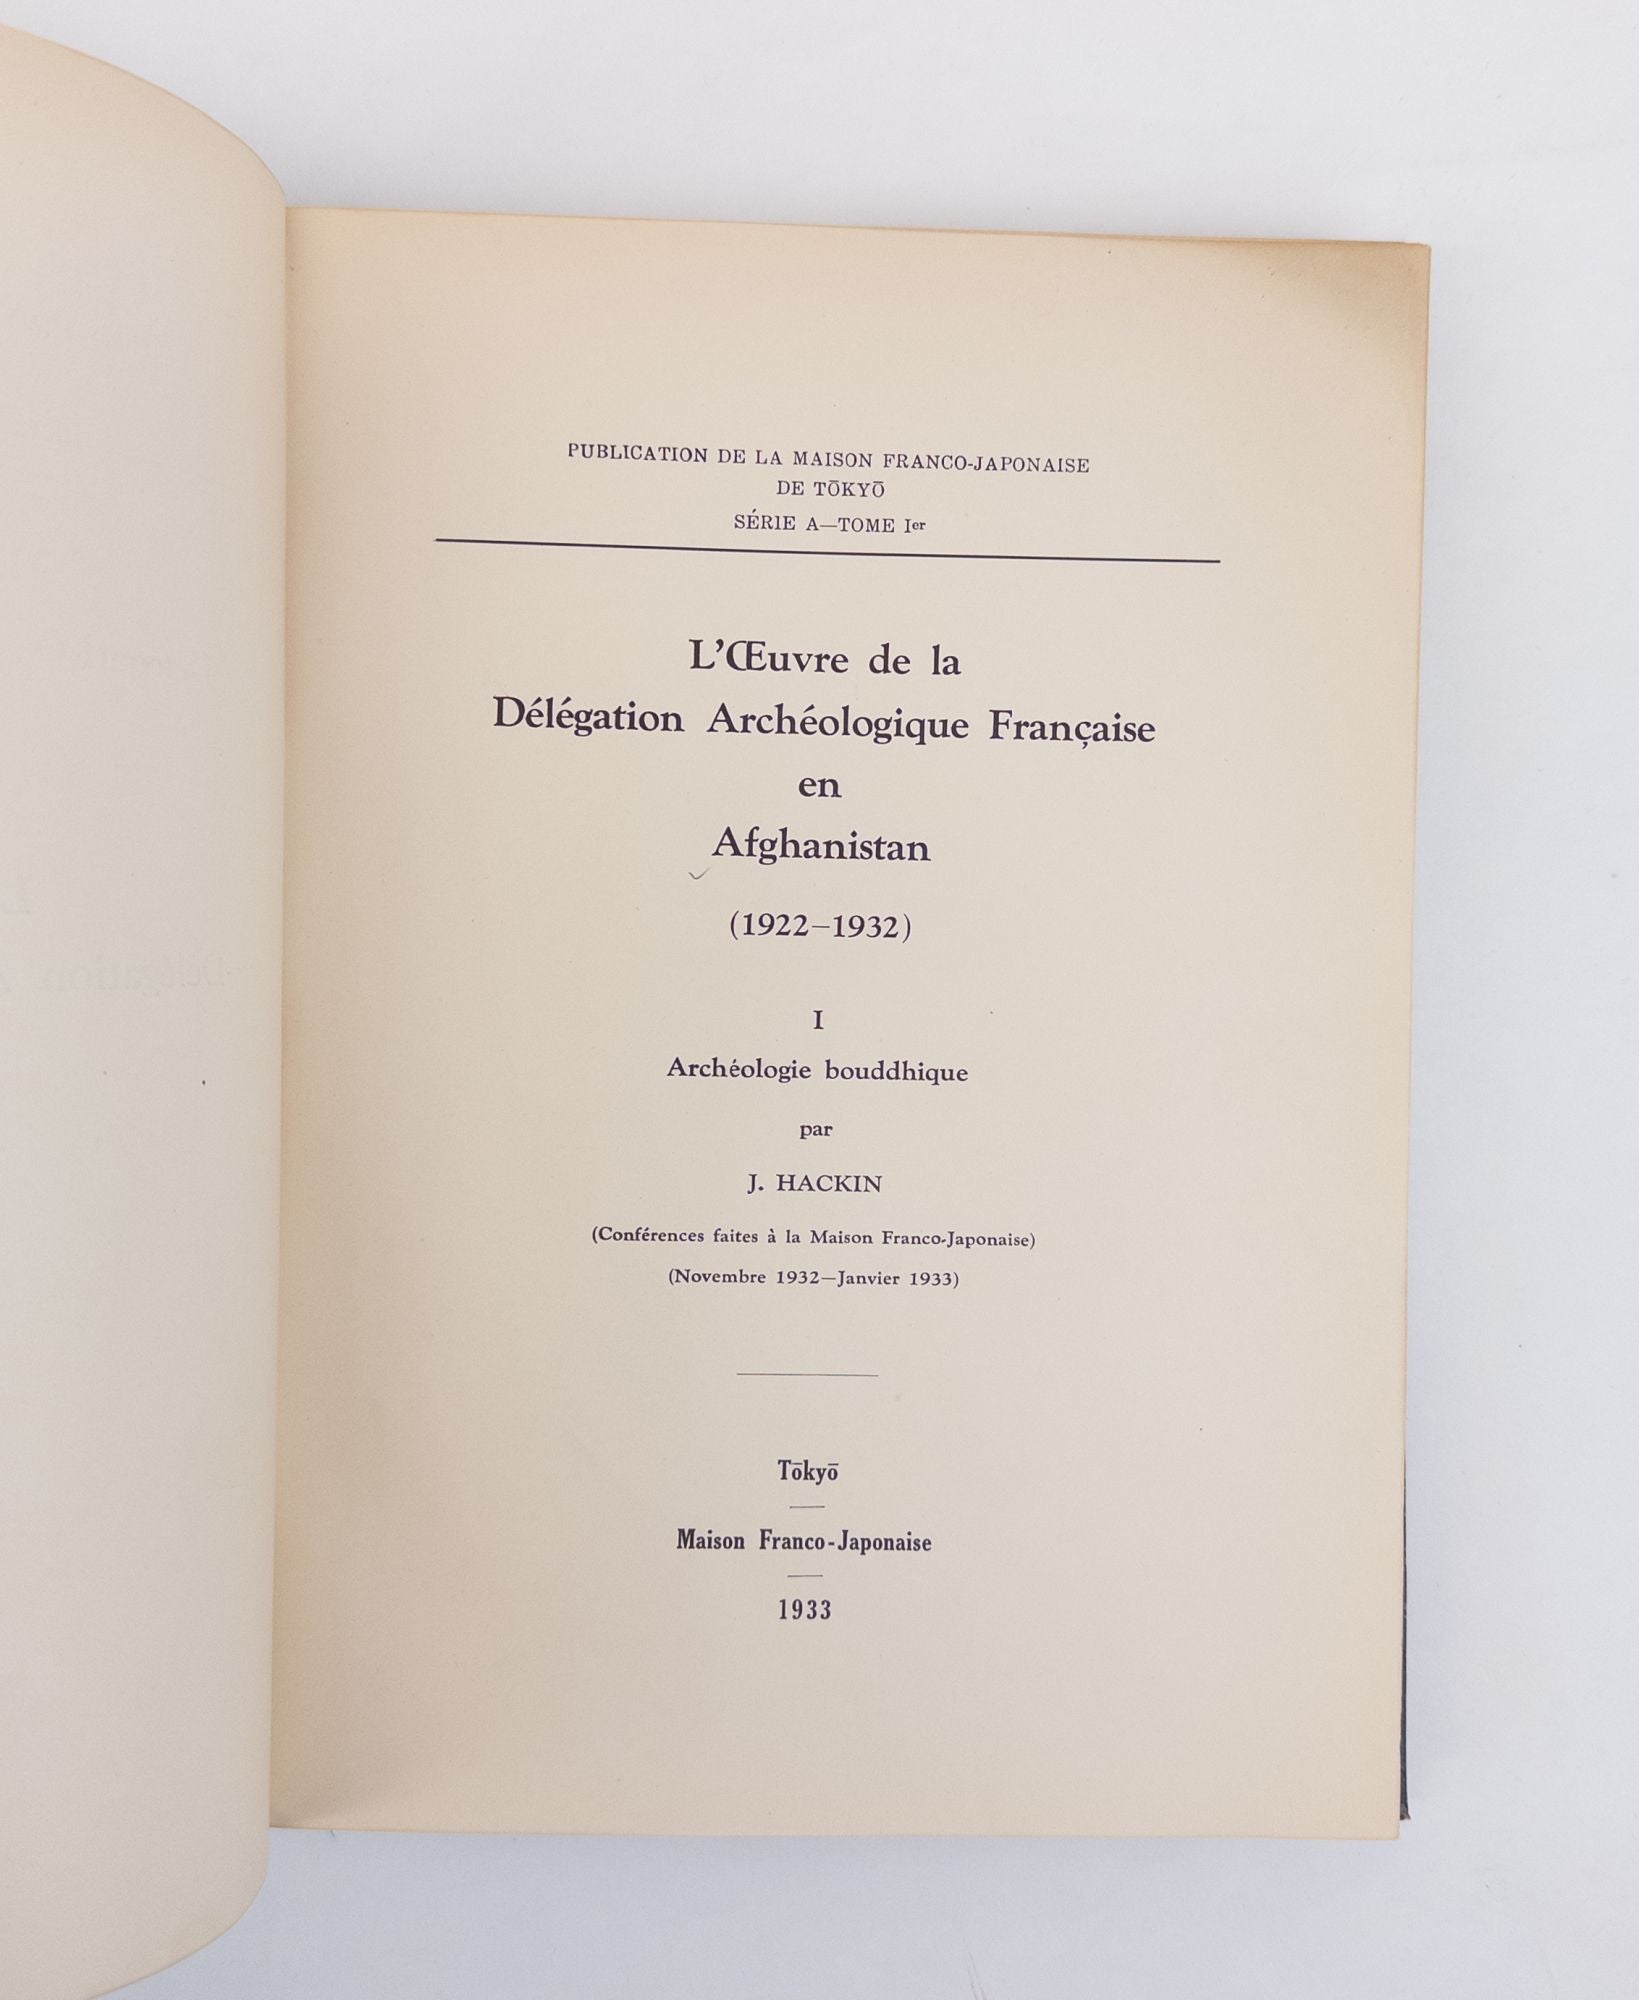 Product Image for L'OEUVRE DE LA DELEGATION ARCHEOLOGIQUE FRANCAISE EN AFGHANISTAN (1922-1932) I. ARCHEOLOGIE BOUDDHIQUE